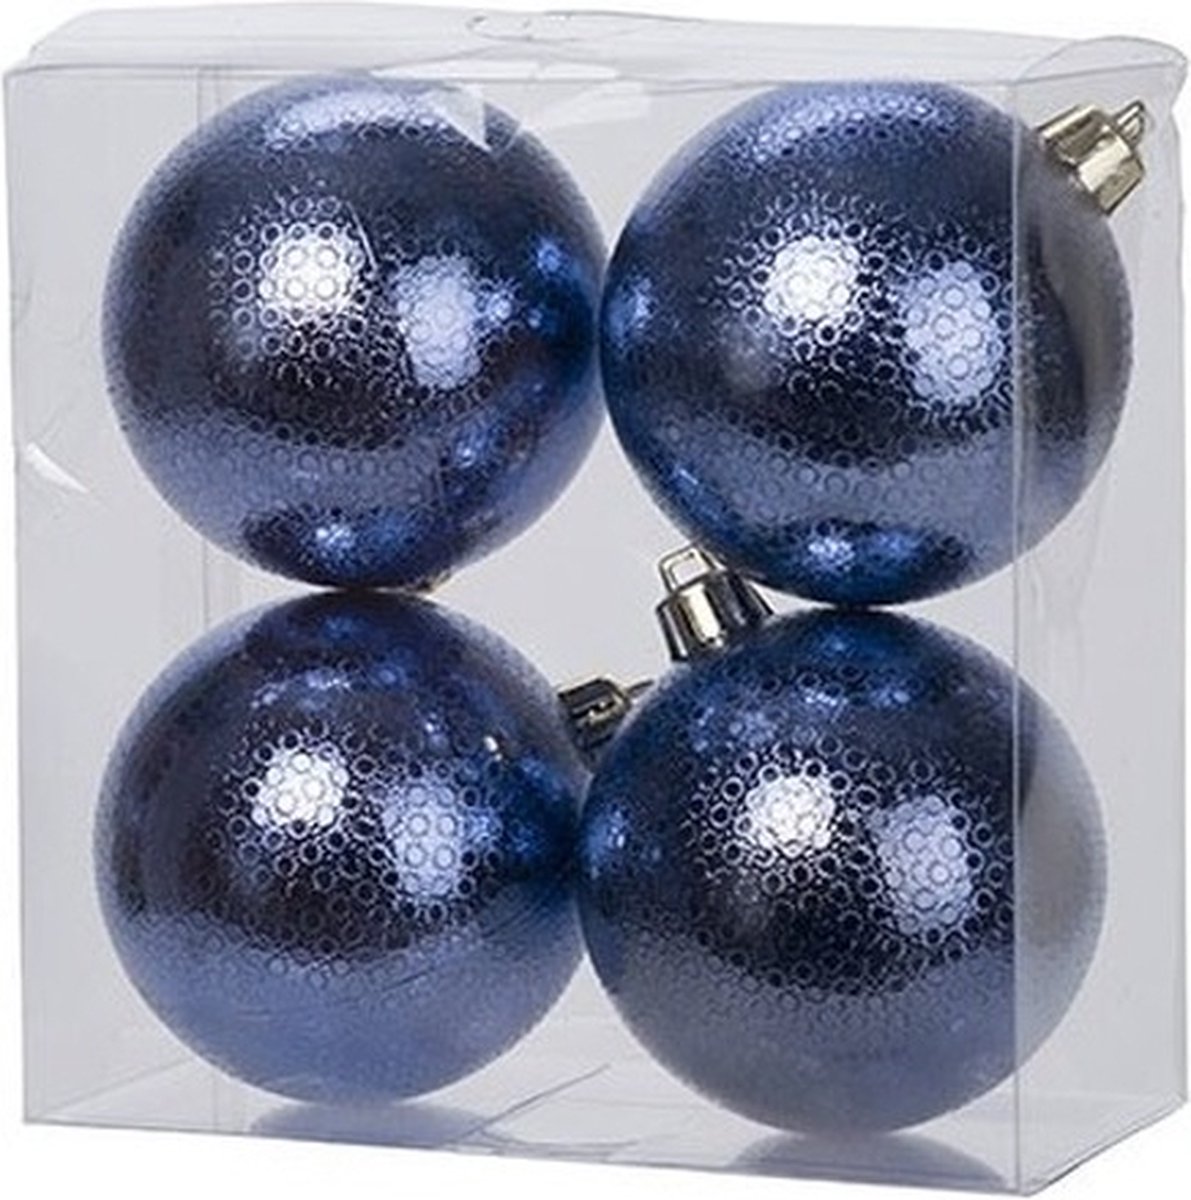 8x Donkerblauwe kunststof kerstballen 8 cm - Cirkel motief - Onbreekbare plastic kerstballen - Kerstboomversiering donkerblauw